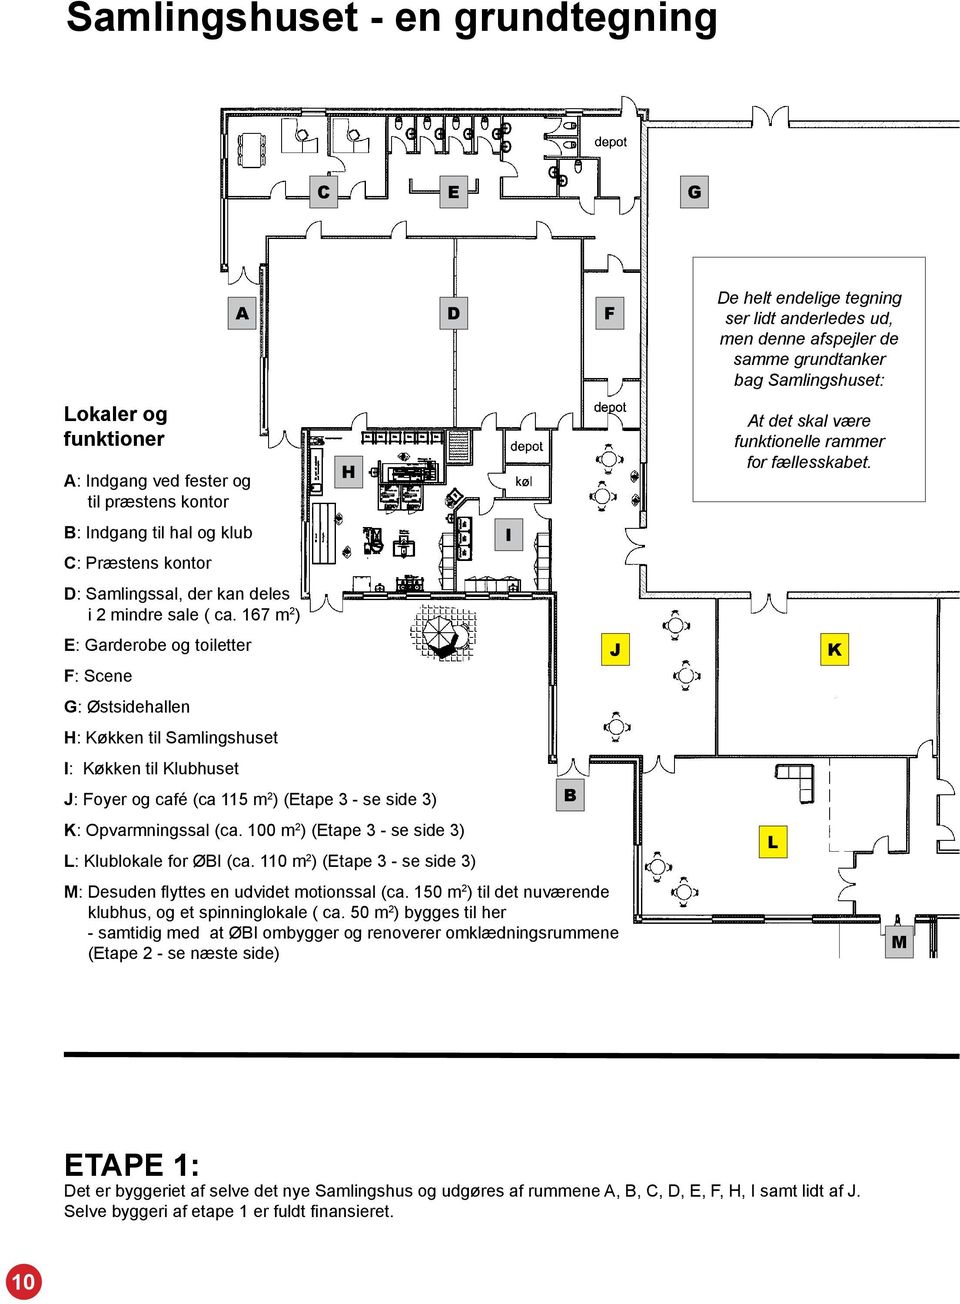 167 m 2 ) E: Garderobe og toiletter J F: Scene G: Østsidehallen H: Køkken til Samlingshuset I: Køkken til Klubhuset J: Foyer og café (ca 115 m 2 ) (Etape 3 - se side 3) B K: Opvarmningssal (ca.